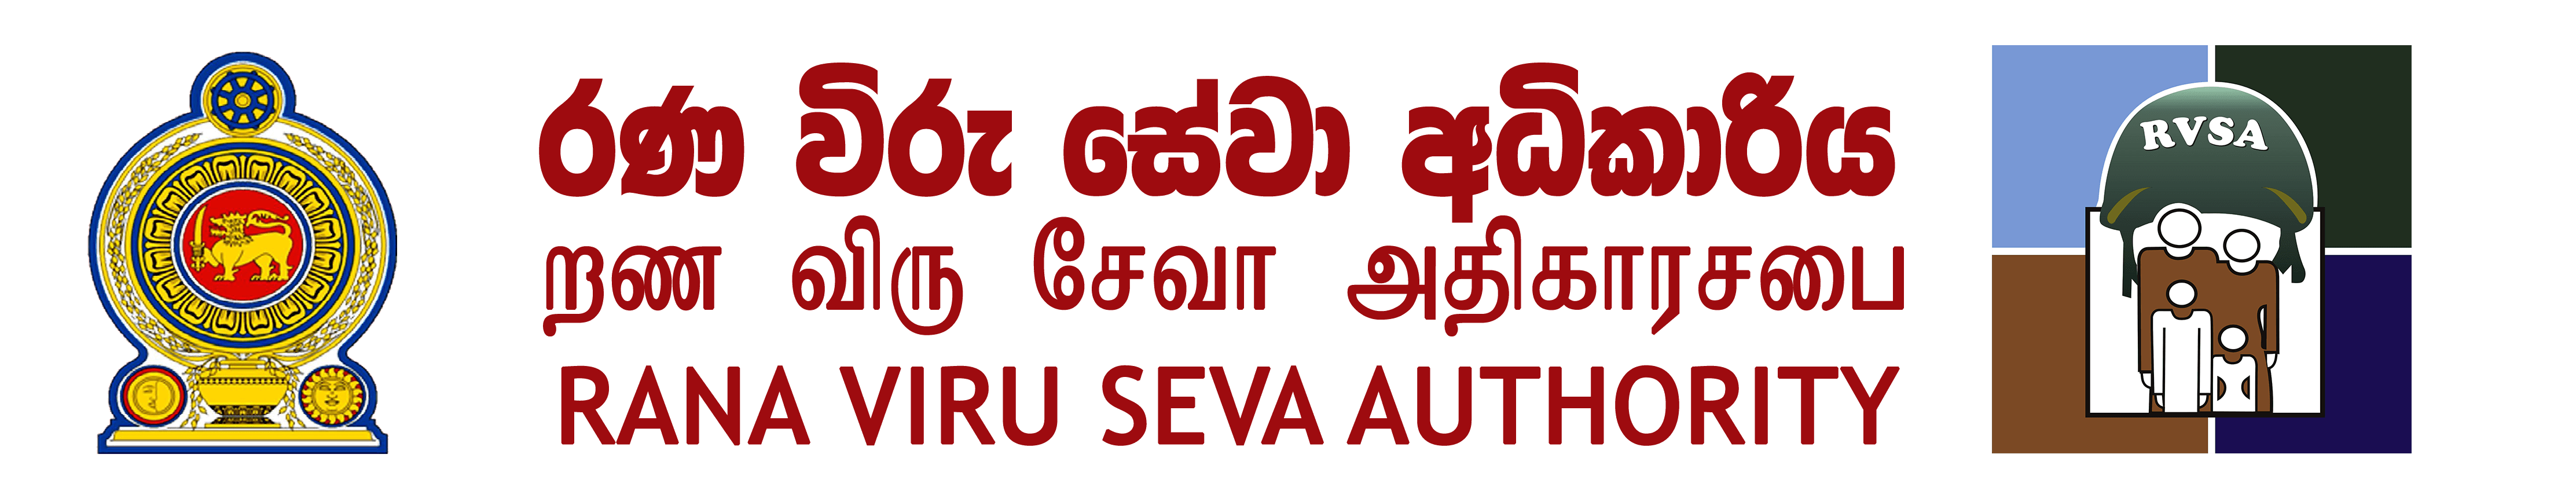 Ranaviru Seva Authority